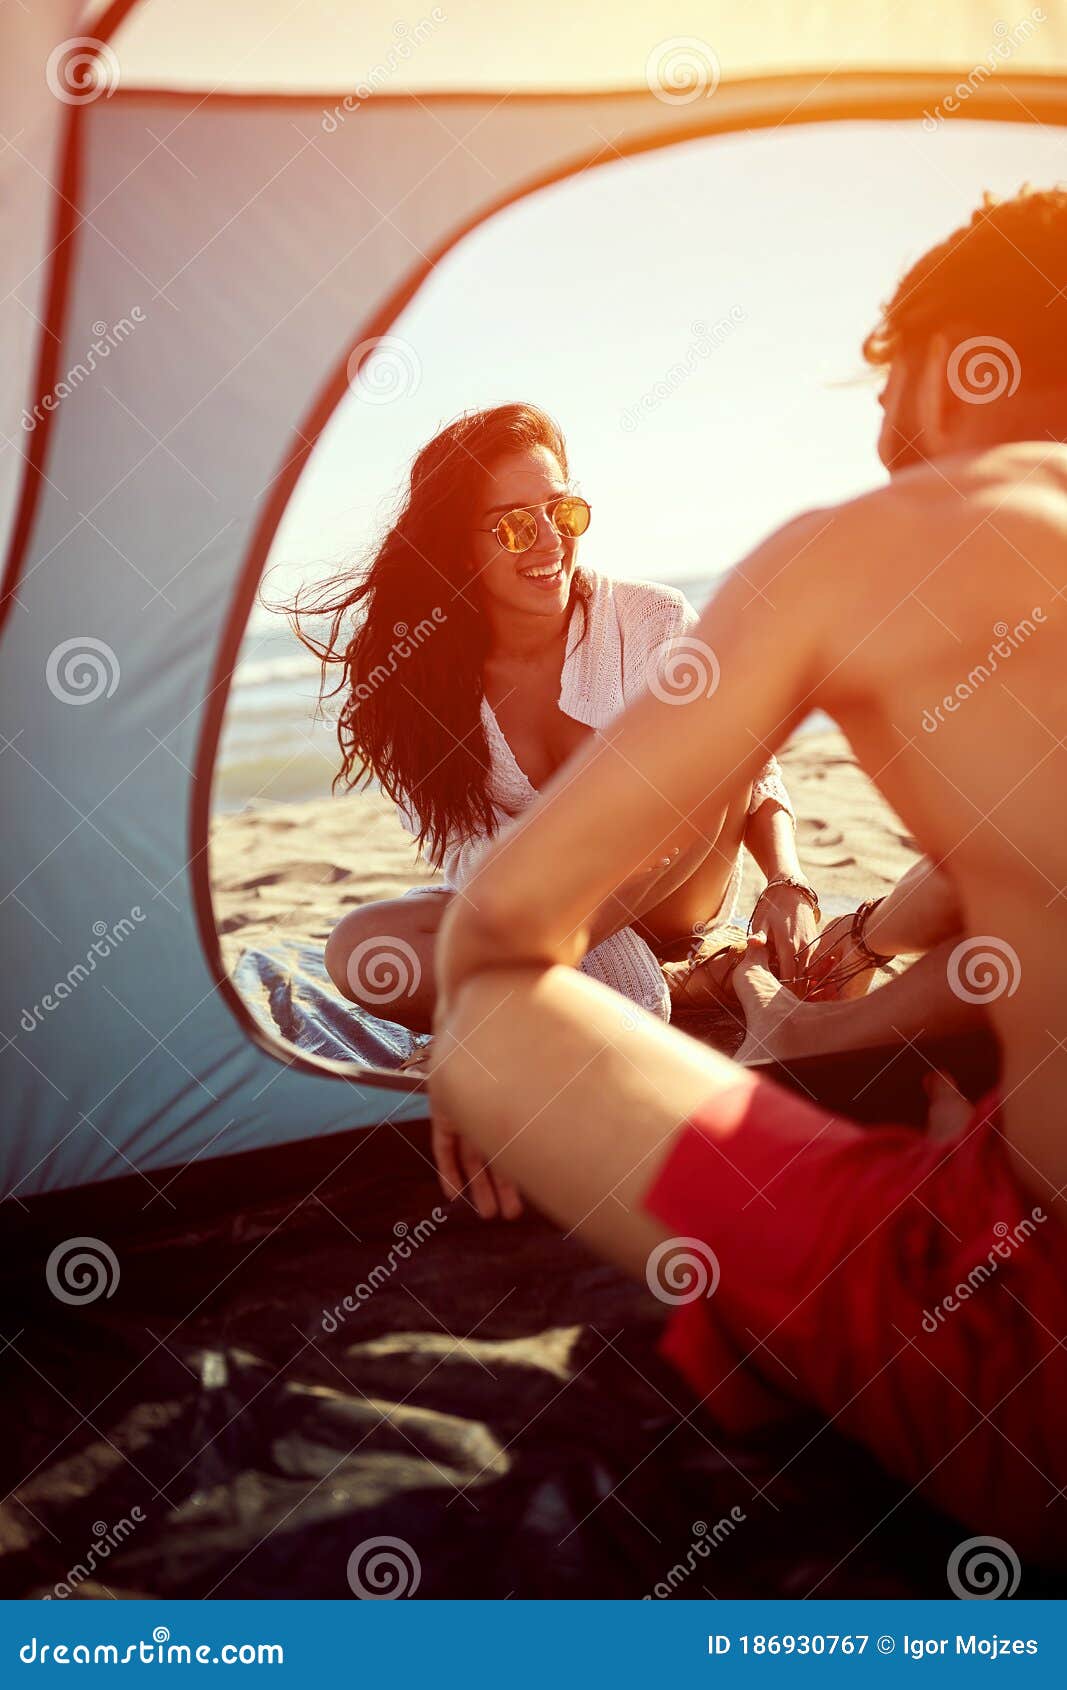 Erotica Camping